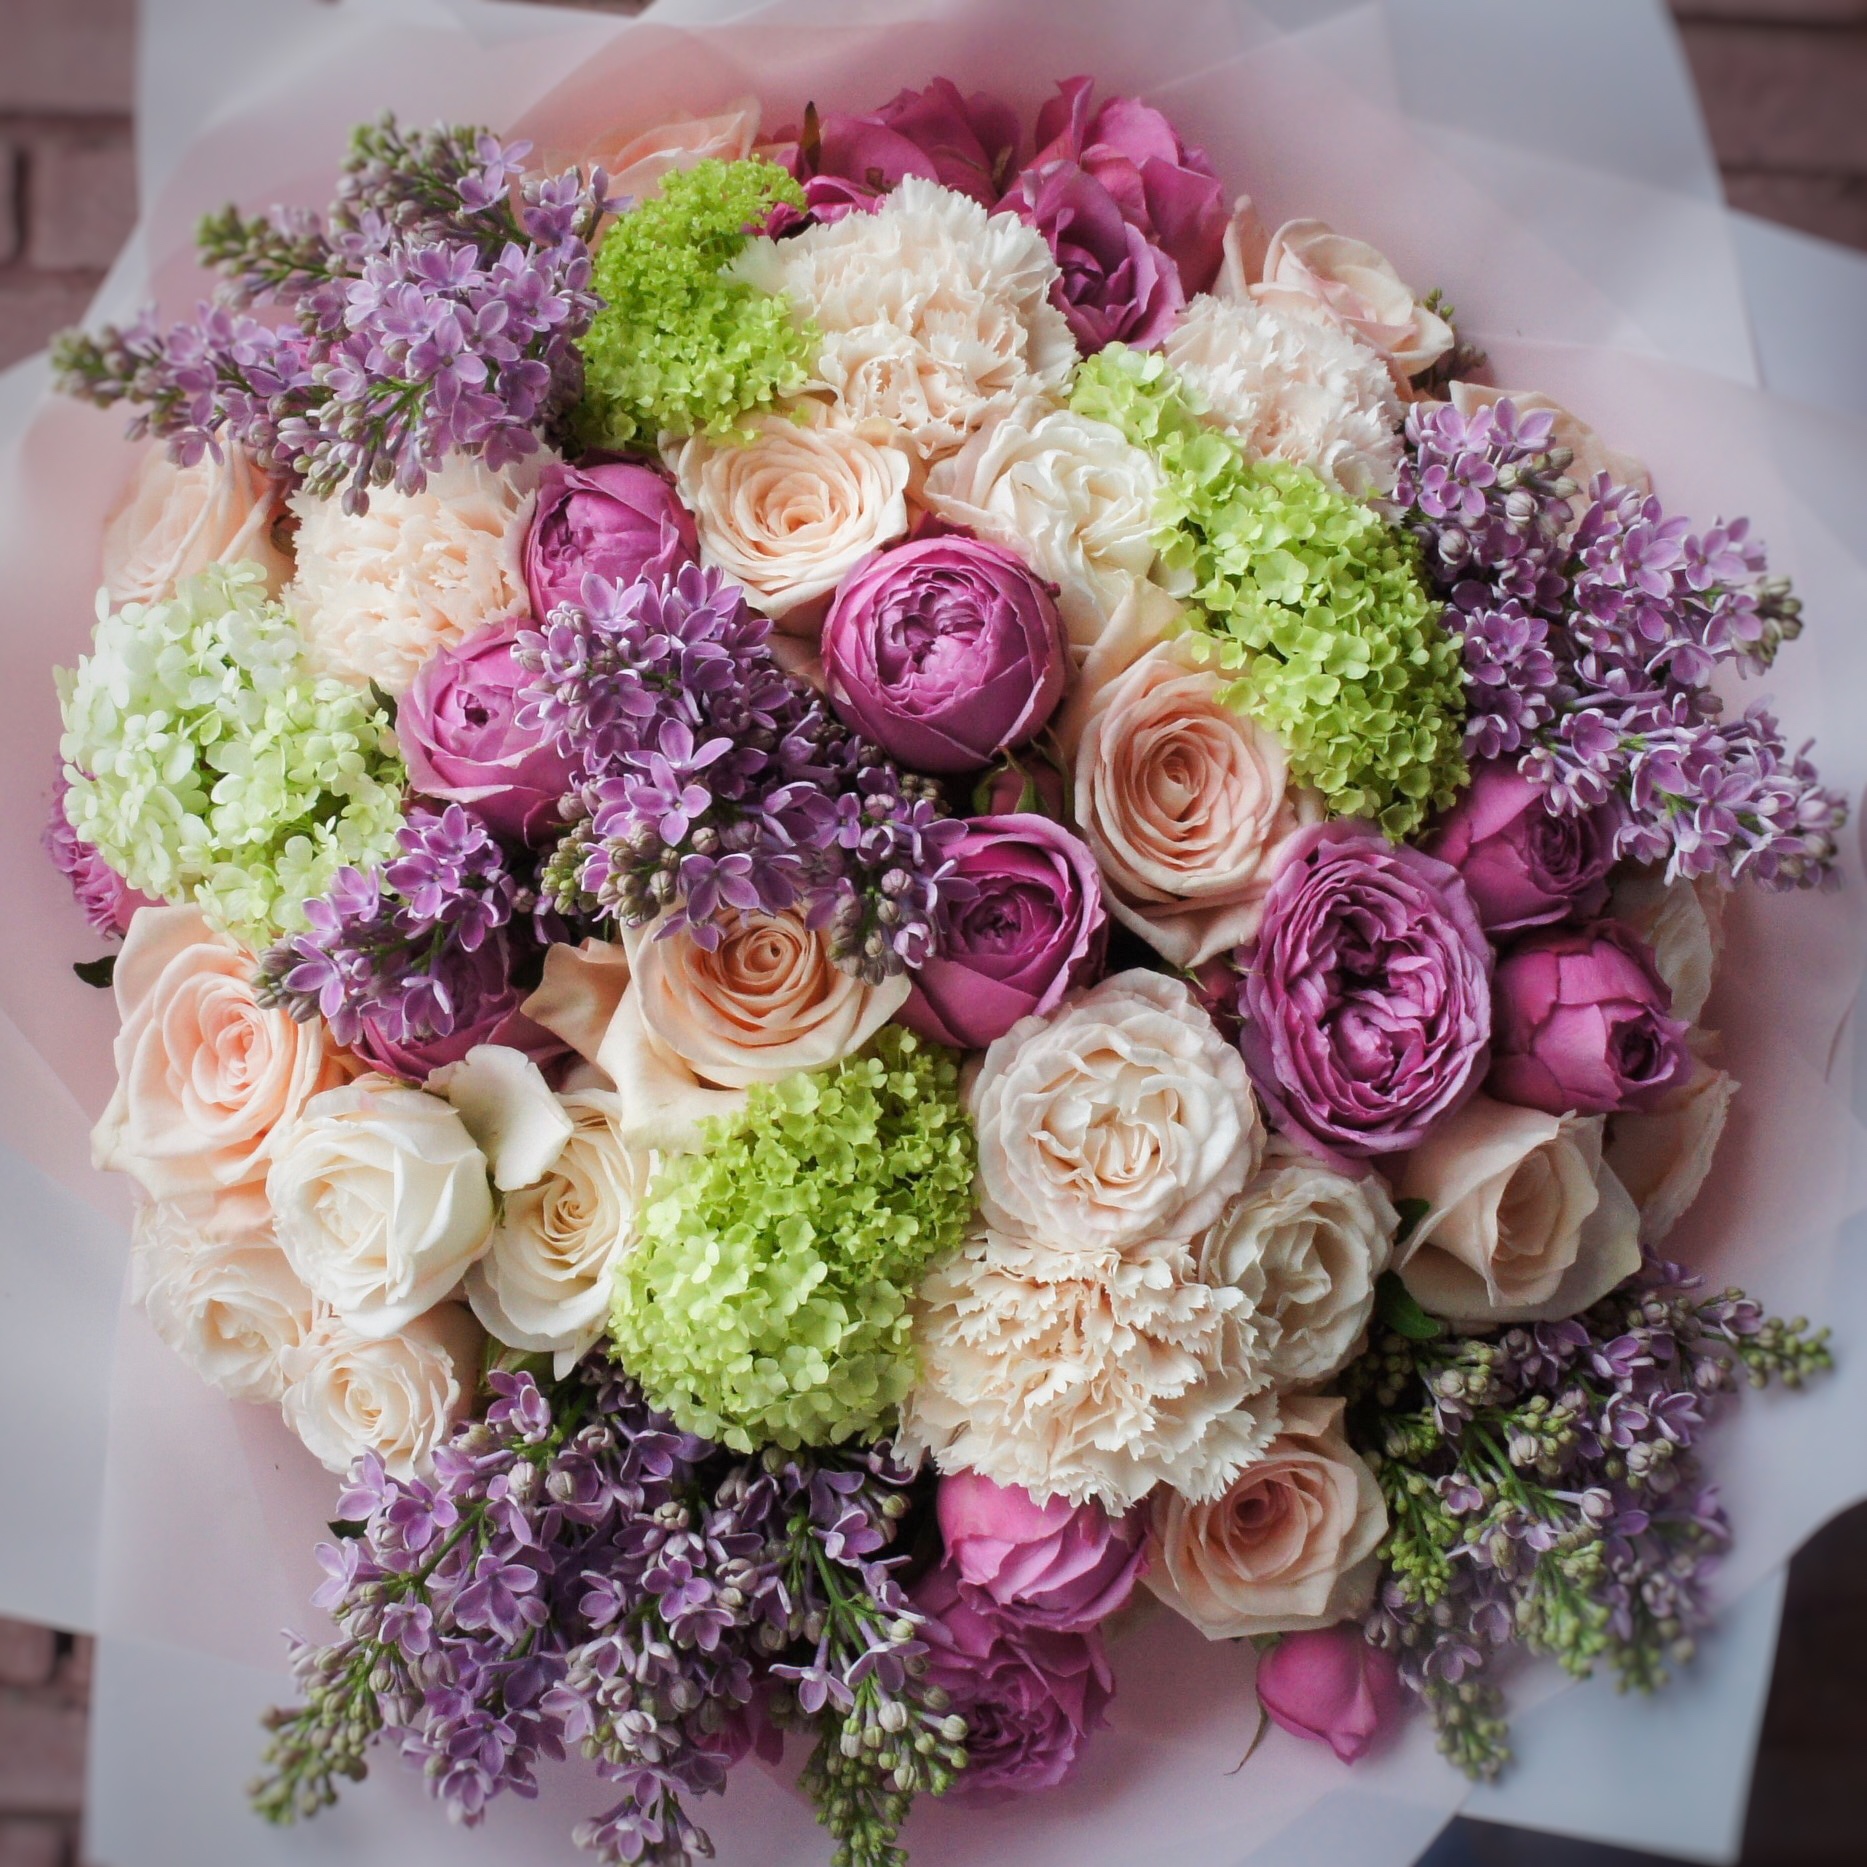 Купить букет / цветы Дианта в Москве с доставкой по отличной цене